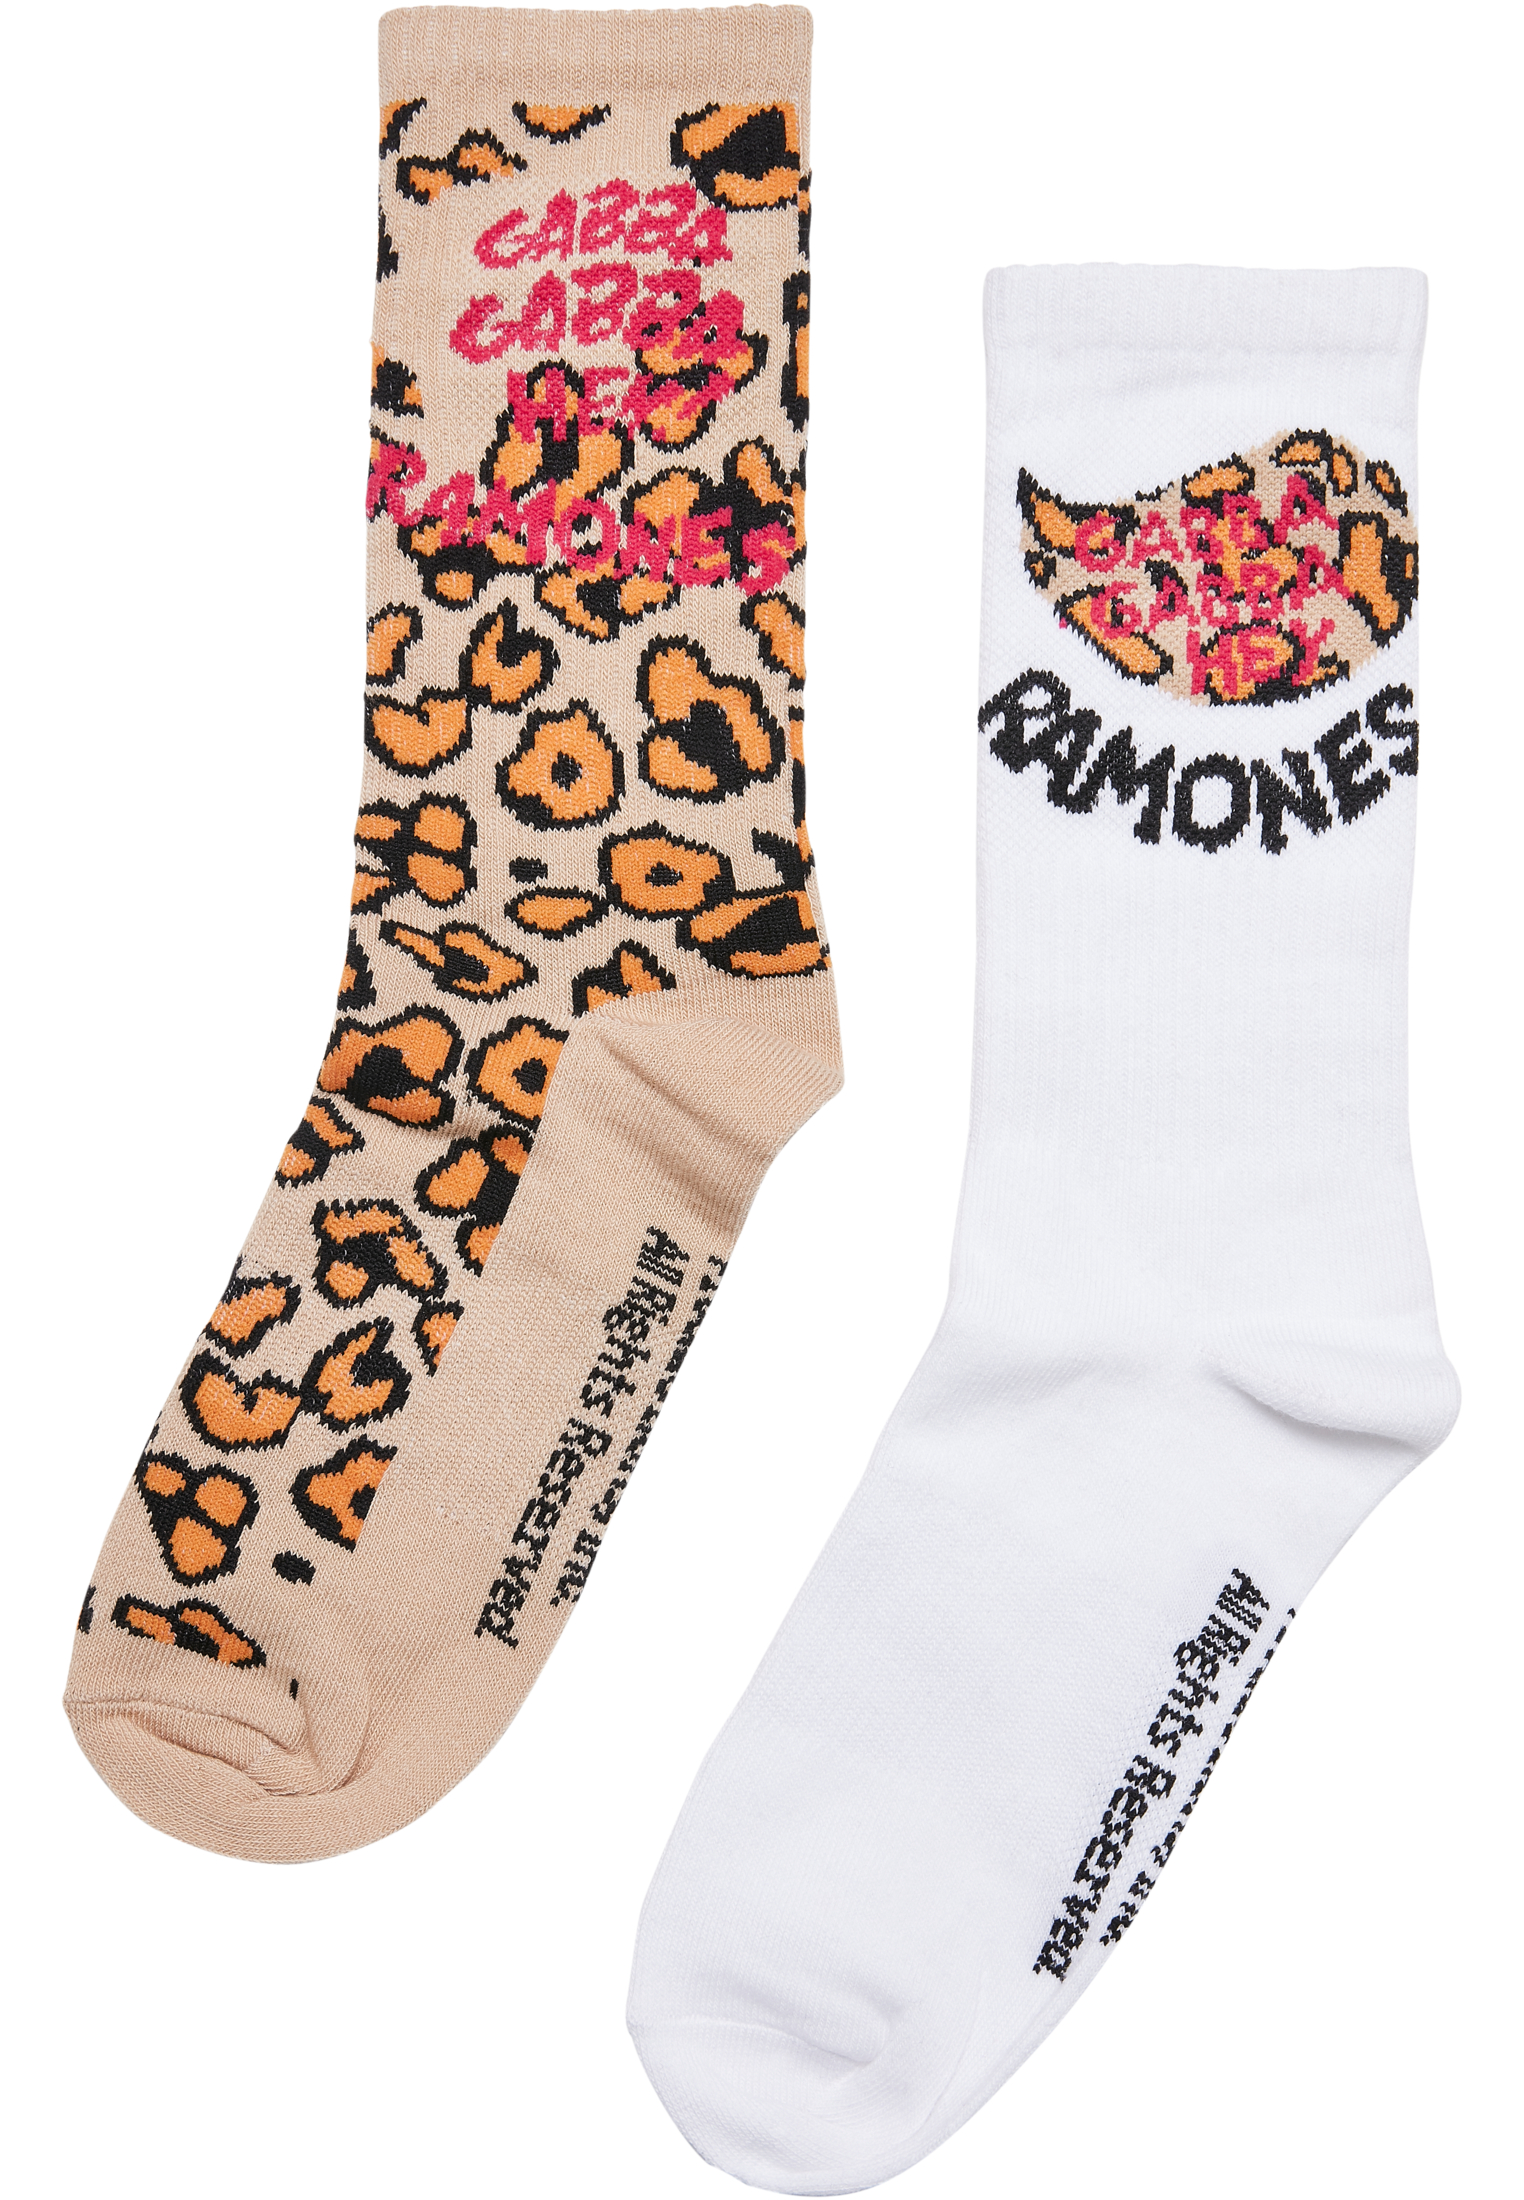  Ramones Leo Socks 2-Pack in Farbe leo aop/offwhite